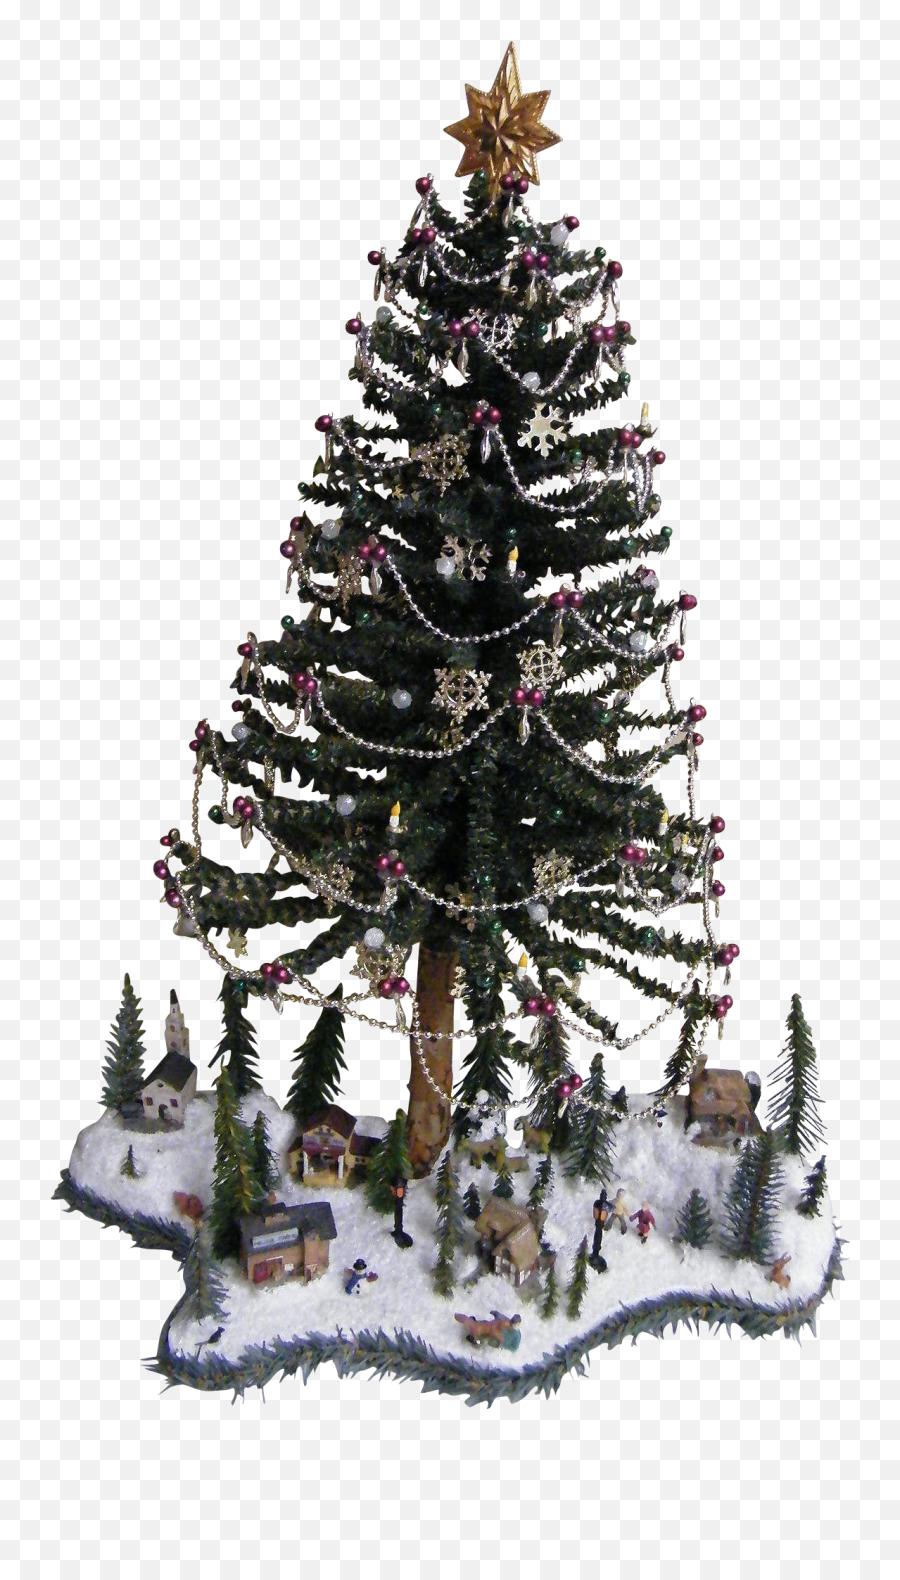 Christmas Tree Snow - Christmas Tree Png Download Christmas Day,Snow Tree Png